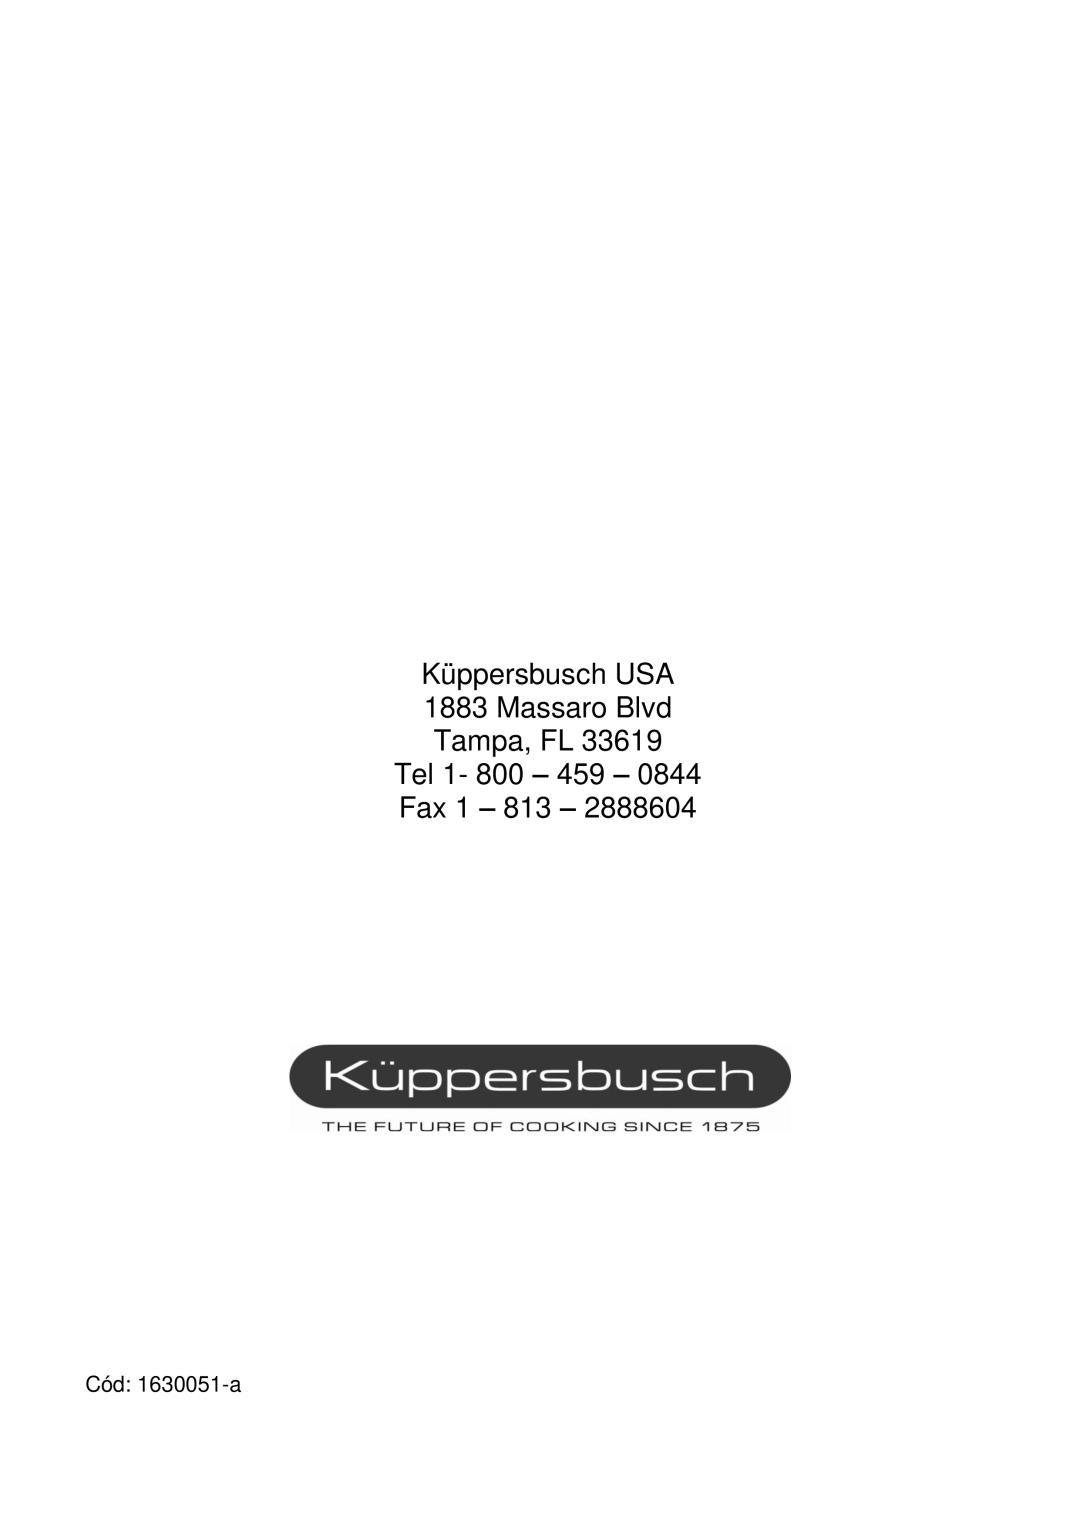 Kuppersbusch USA EMWK1050.1E-UL Küppersbusch USA 1883 Massaro Blvd Tampa, FL, Tel 1- 800 – 459 – Fax 1 – 813 